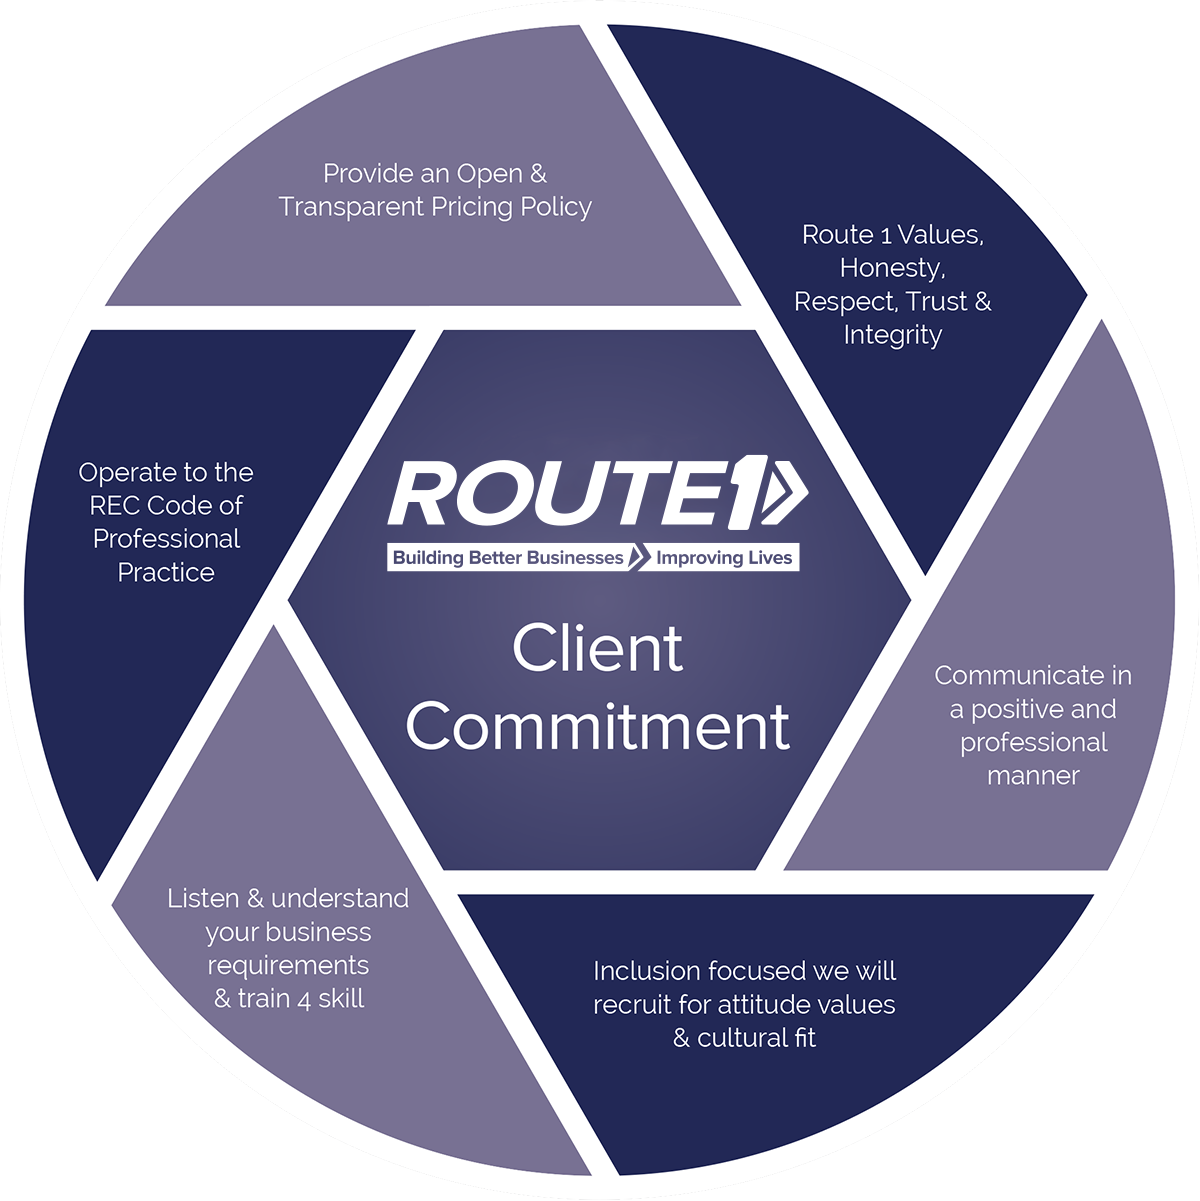 Client Commitment